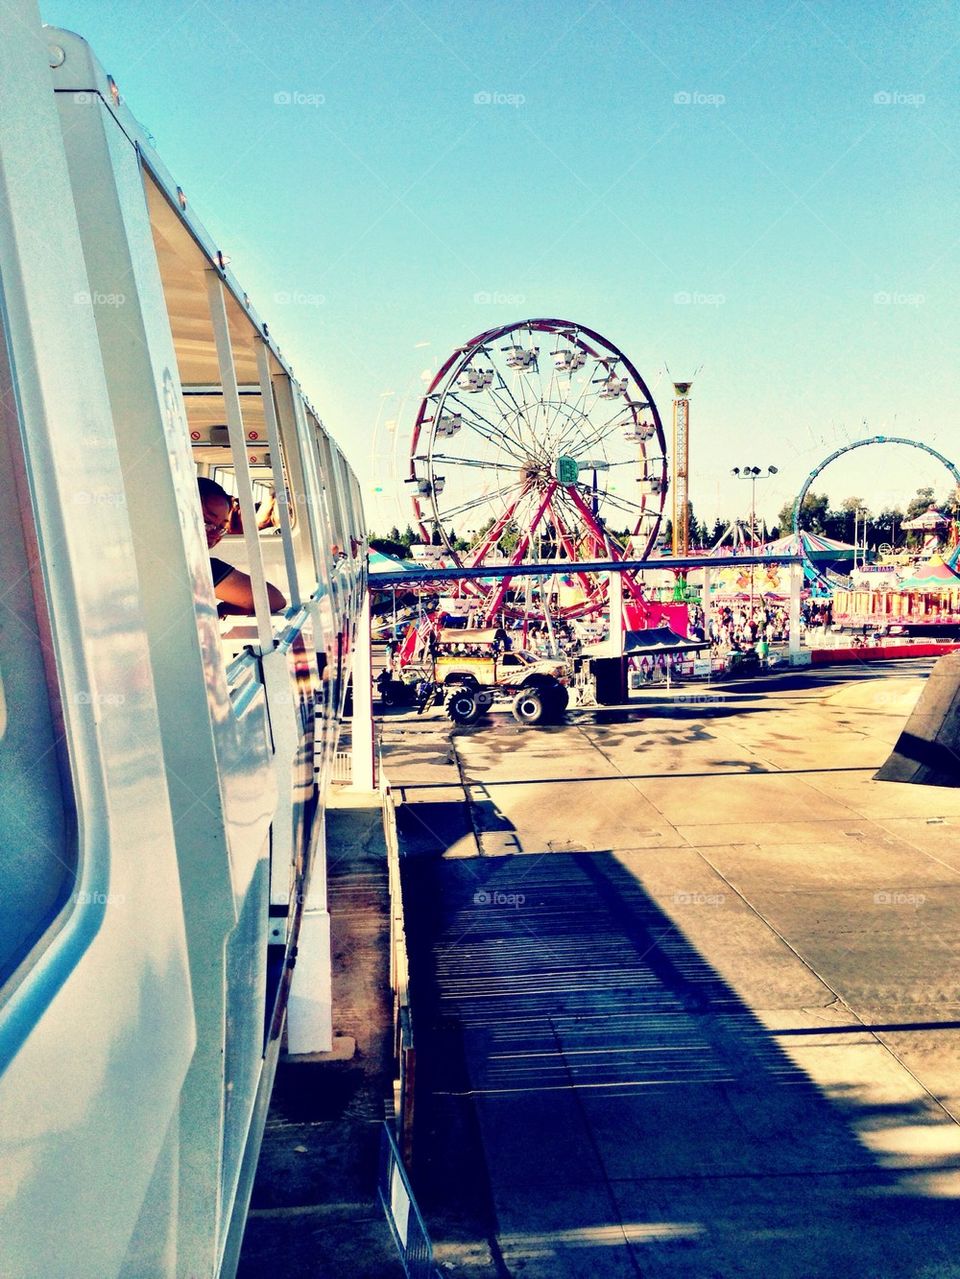 California state fair